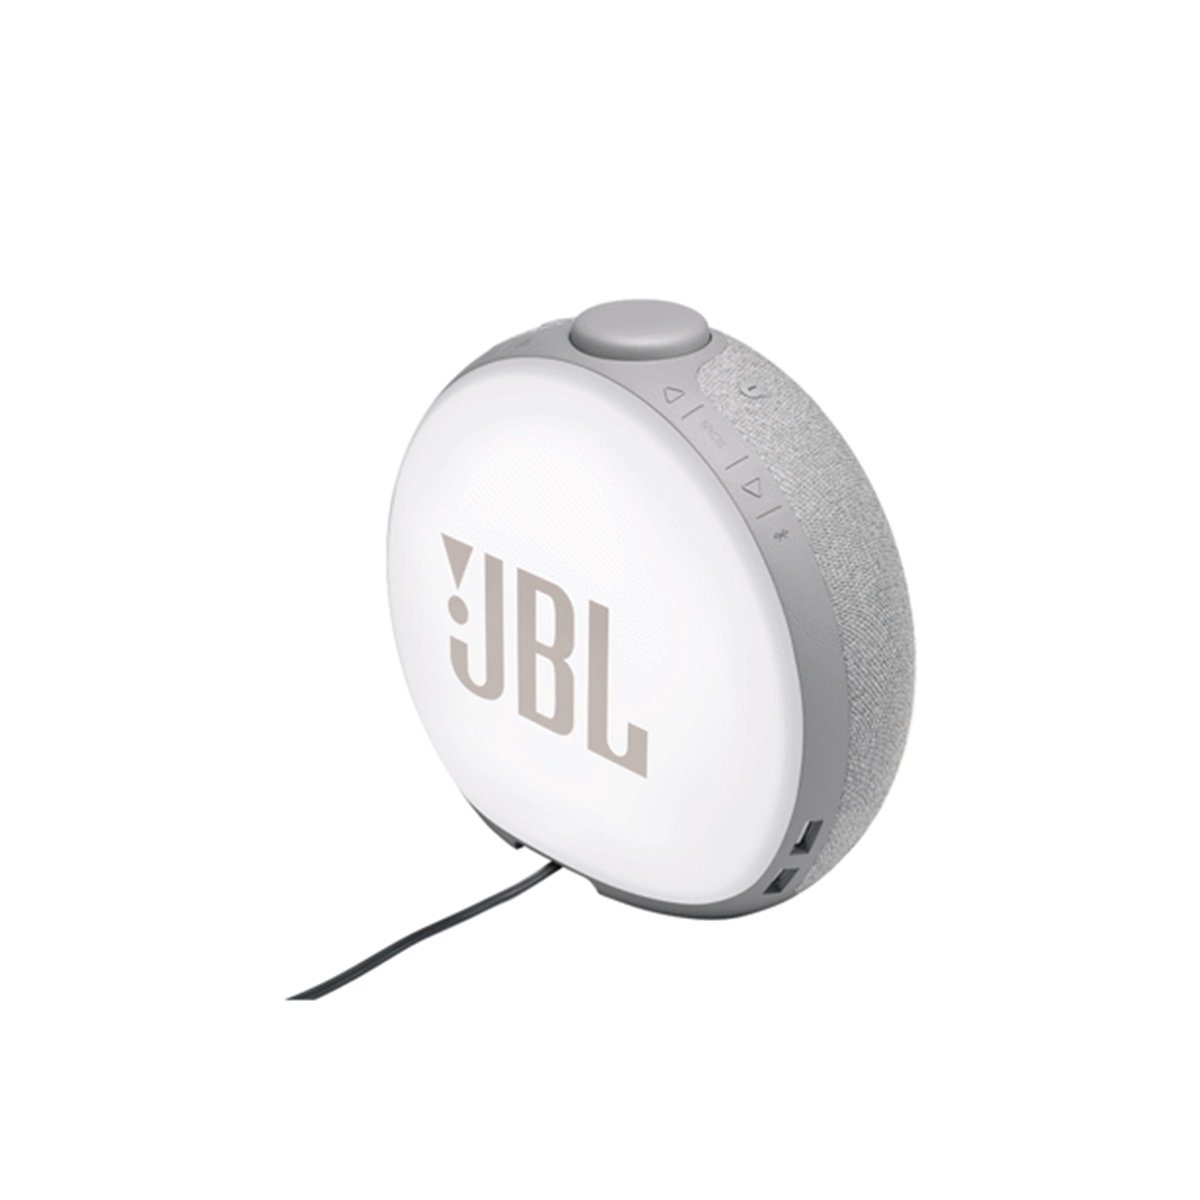  Loa Bluetooth đồng hồ để bàn JBL HORIZON 2 